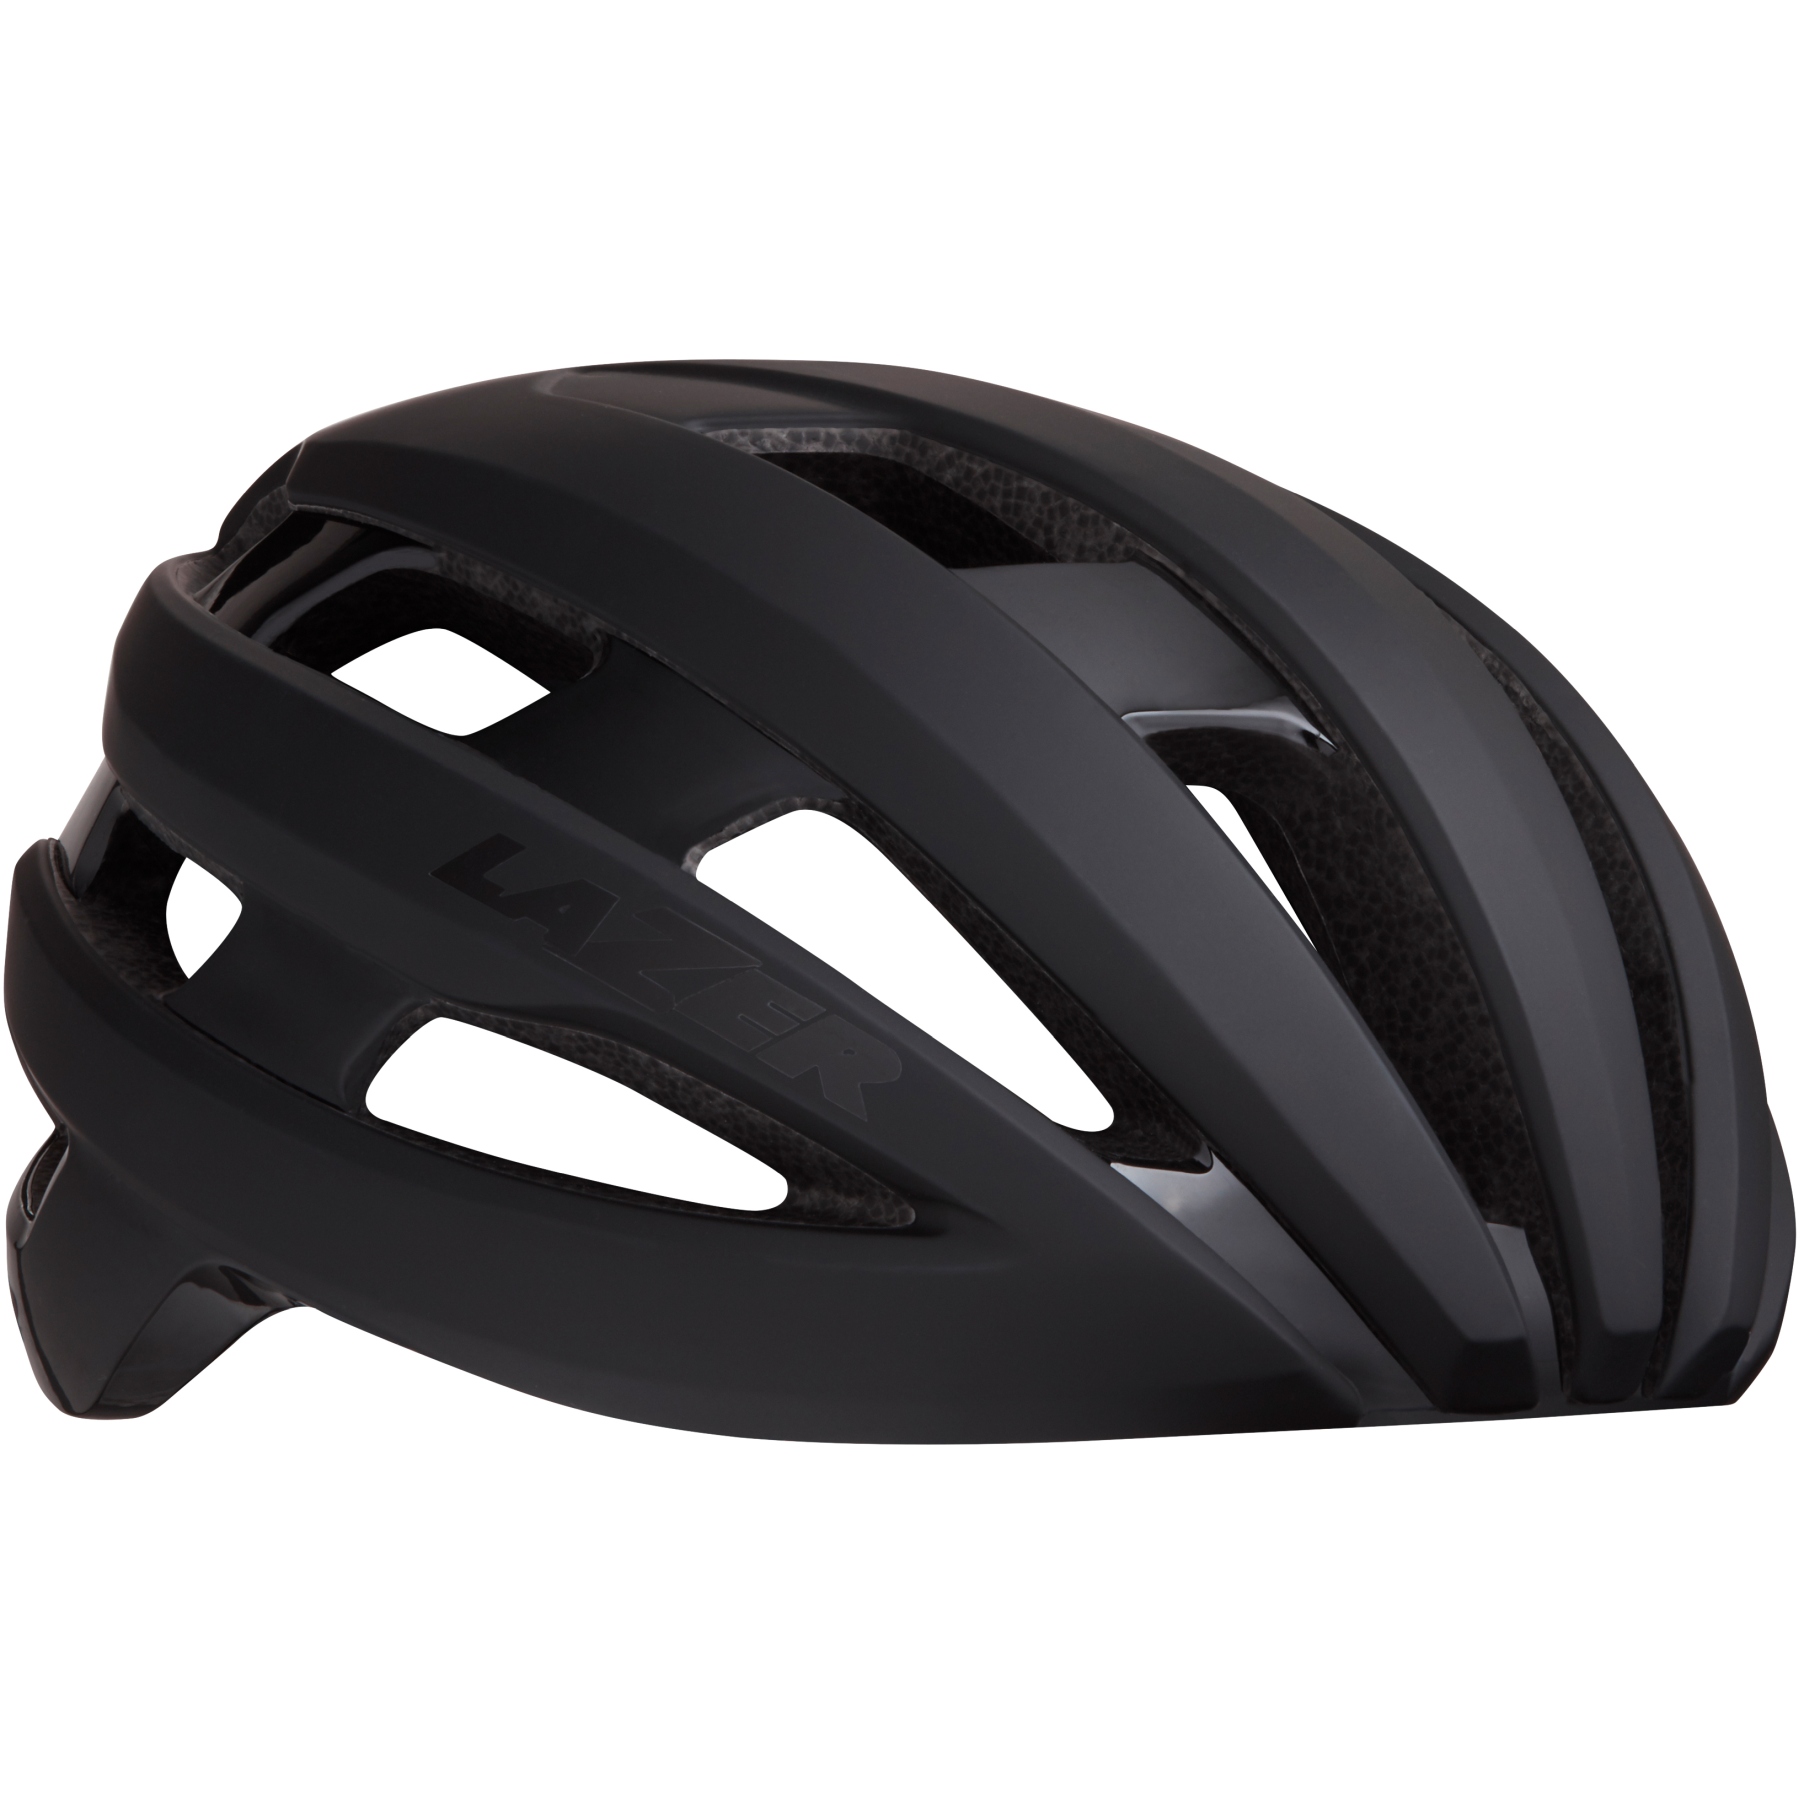 Productfoto van Lazer Sphere MIPS Helmet - matte black